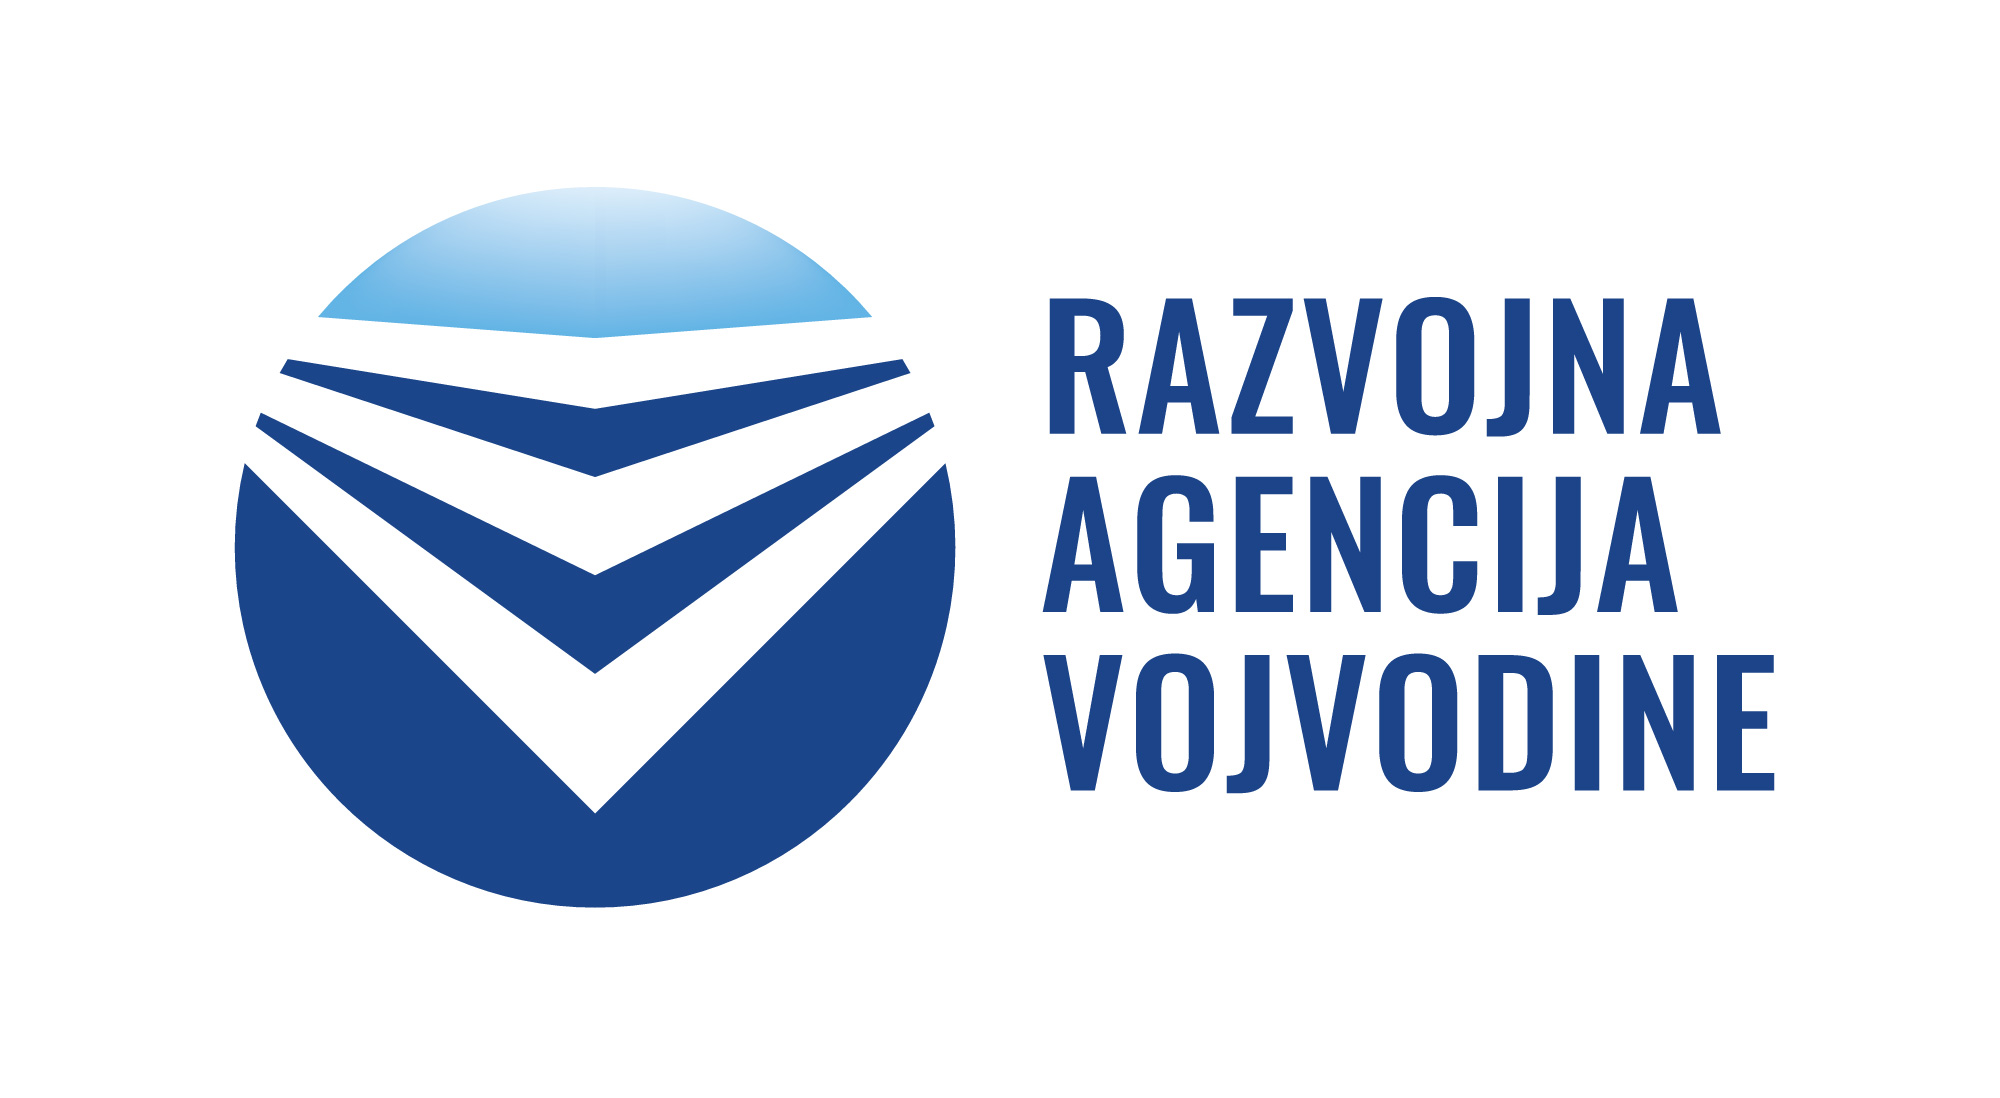 Razvojna agencija Vojvodine